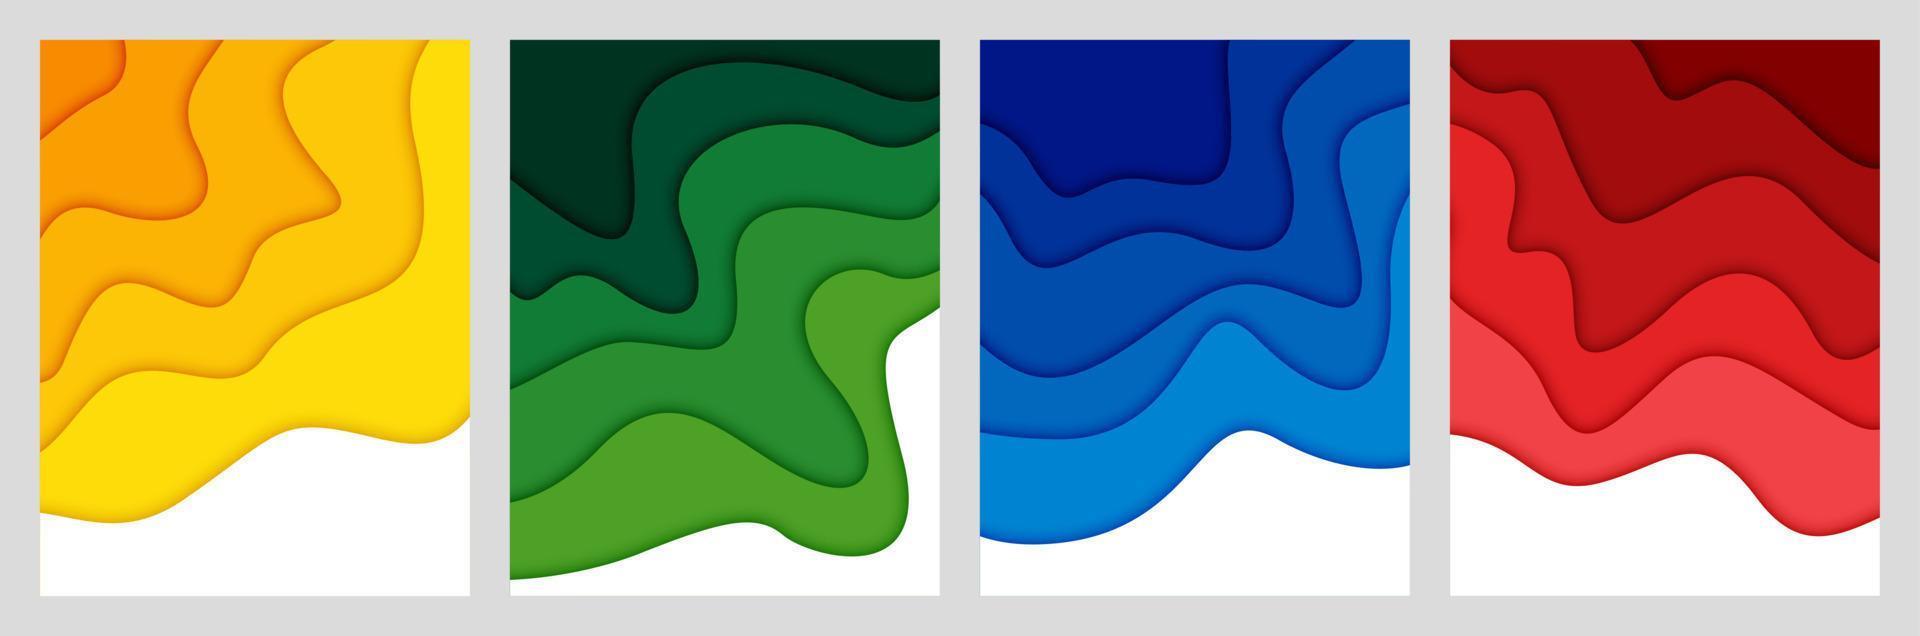 ensemble d'arrière-plan abstrait 3d et de formes découpées en papier, illustration vectorielle vecteur